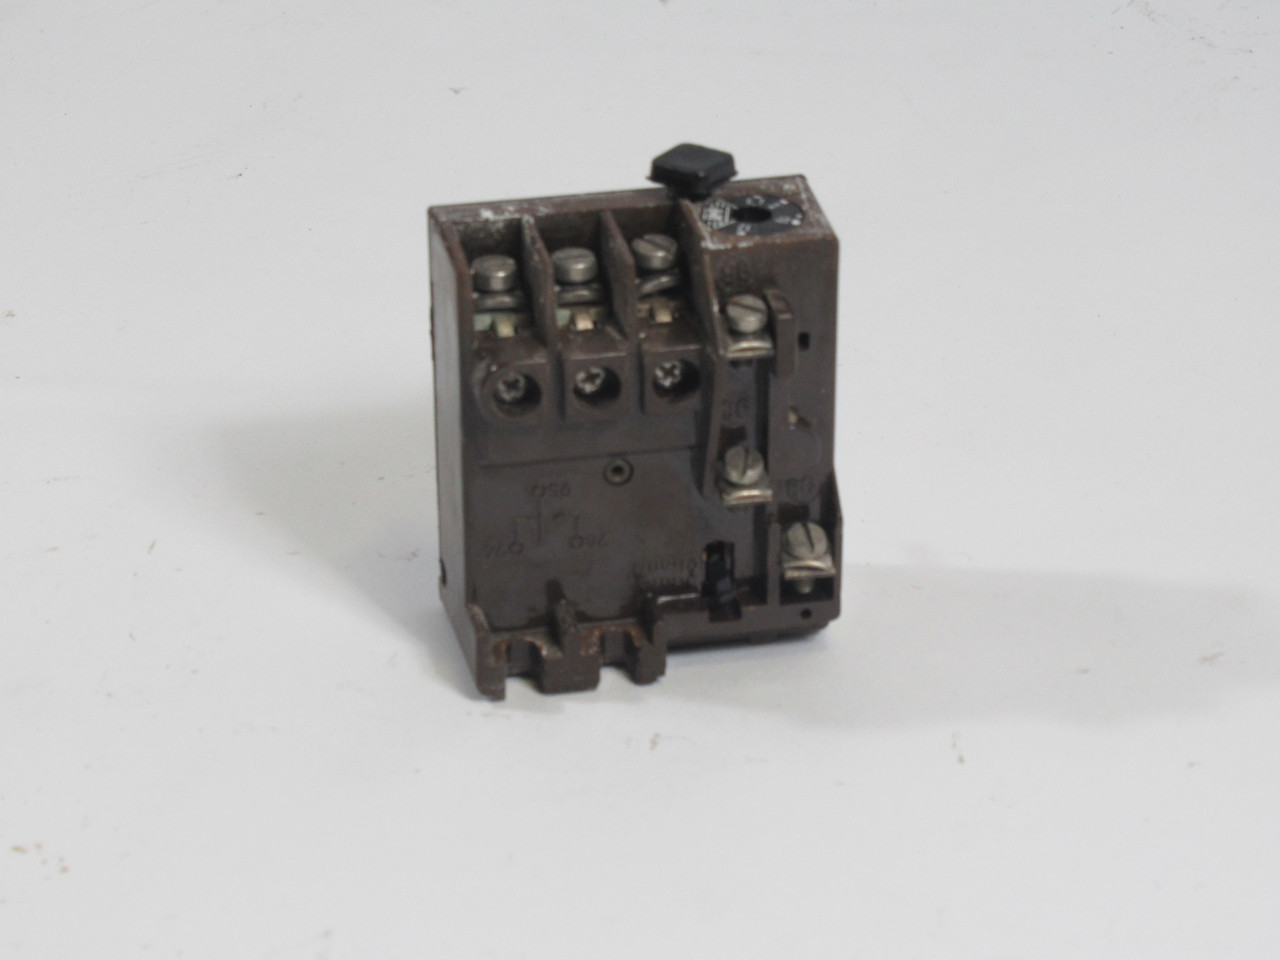 Klockner-Moeller Z0-12 Overload Relay 6.7-12A 500V USED